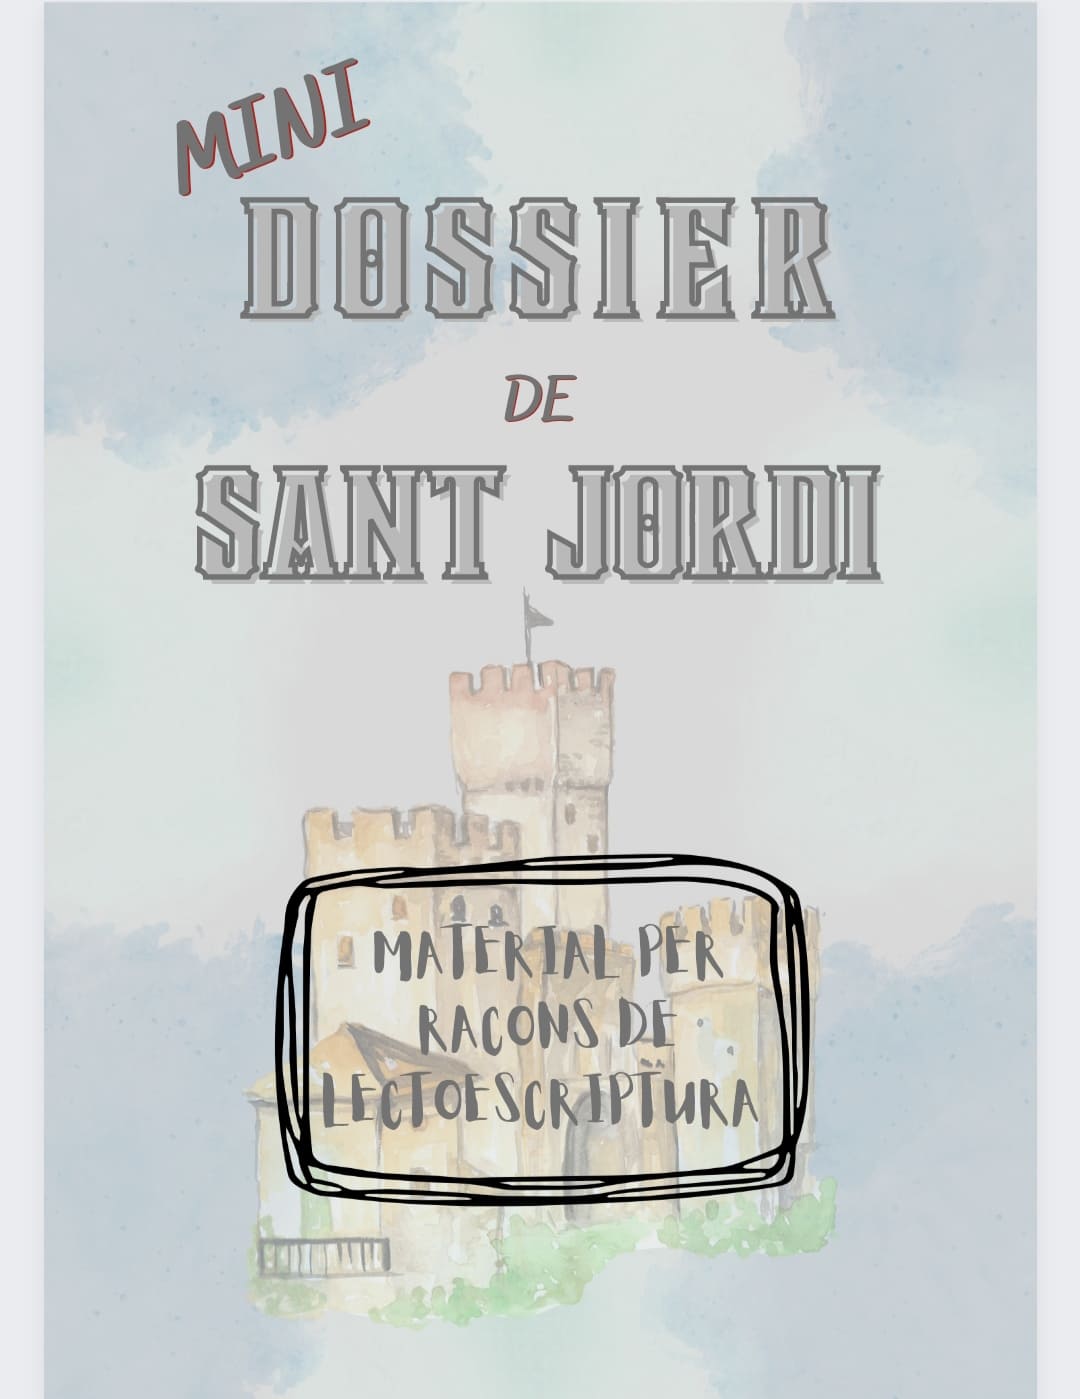 mini dossier lectoescriptura Sant Jordi